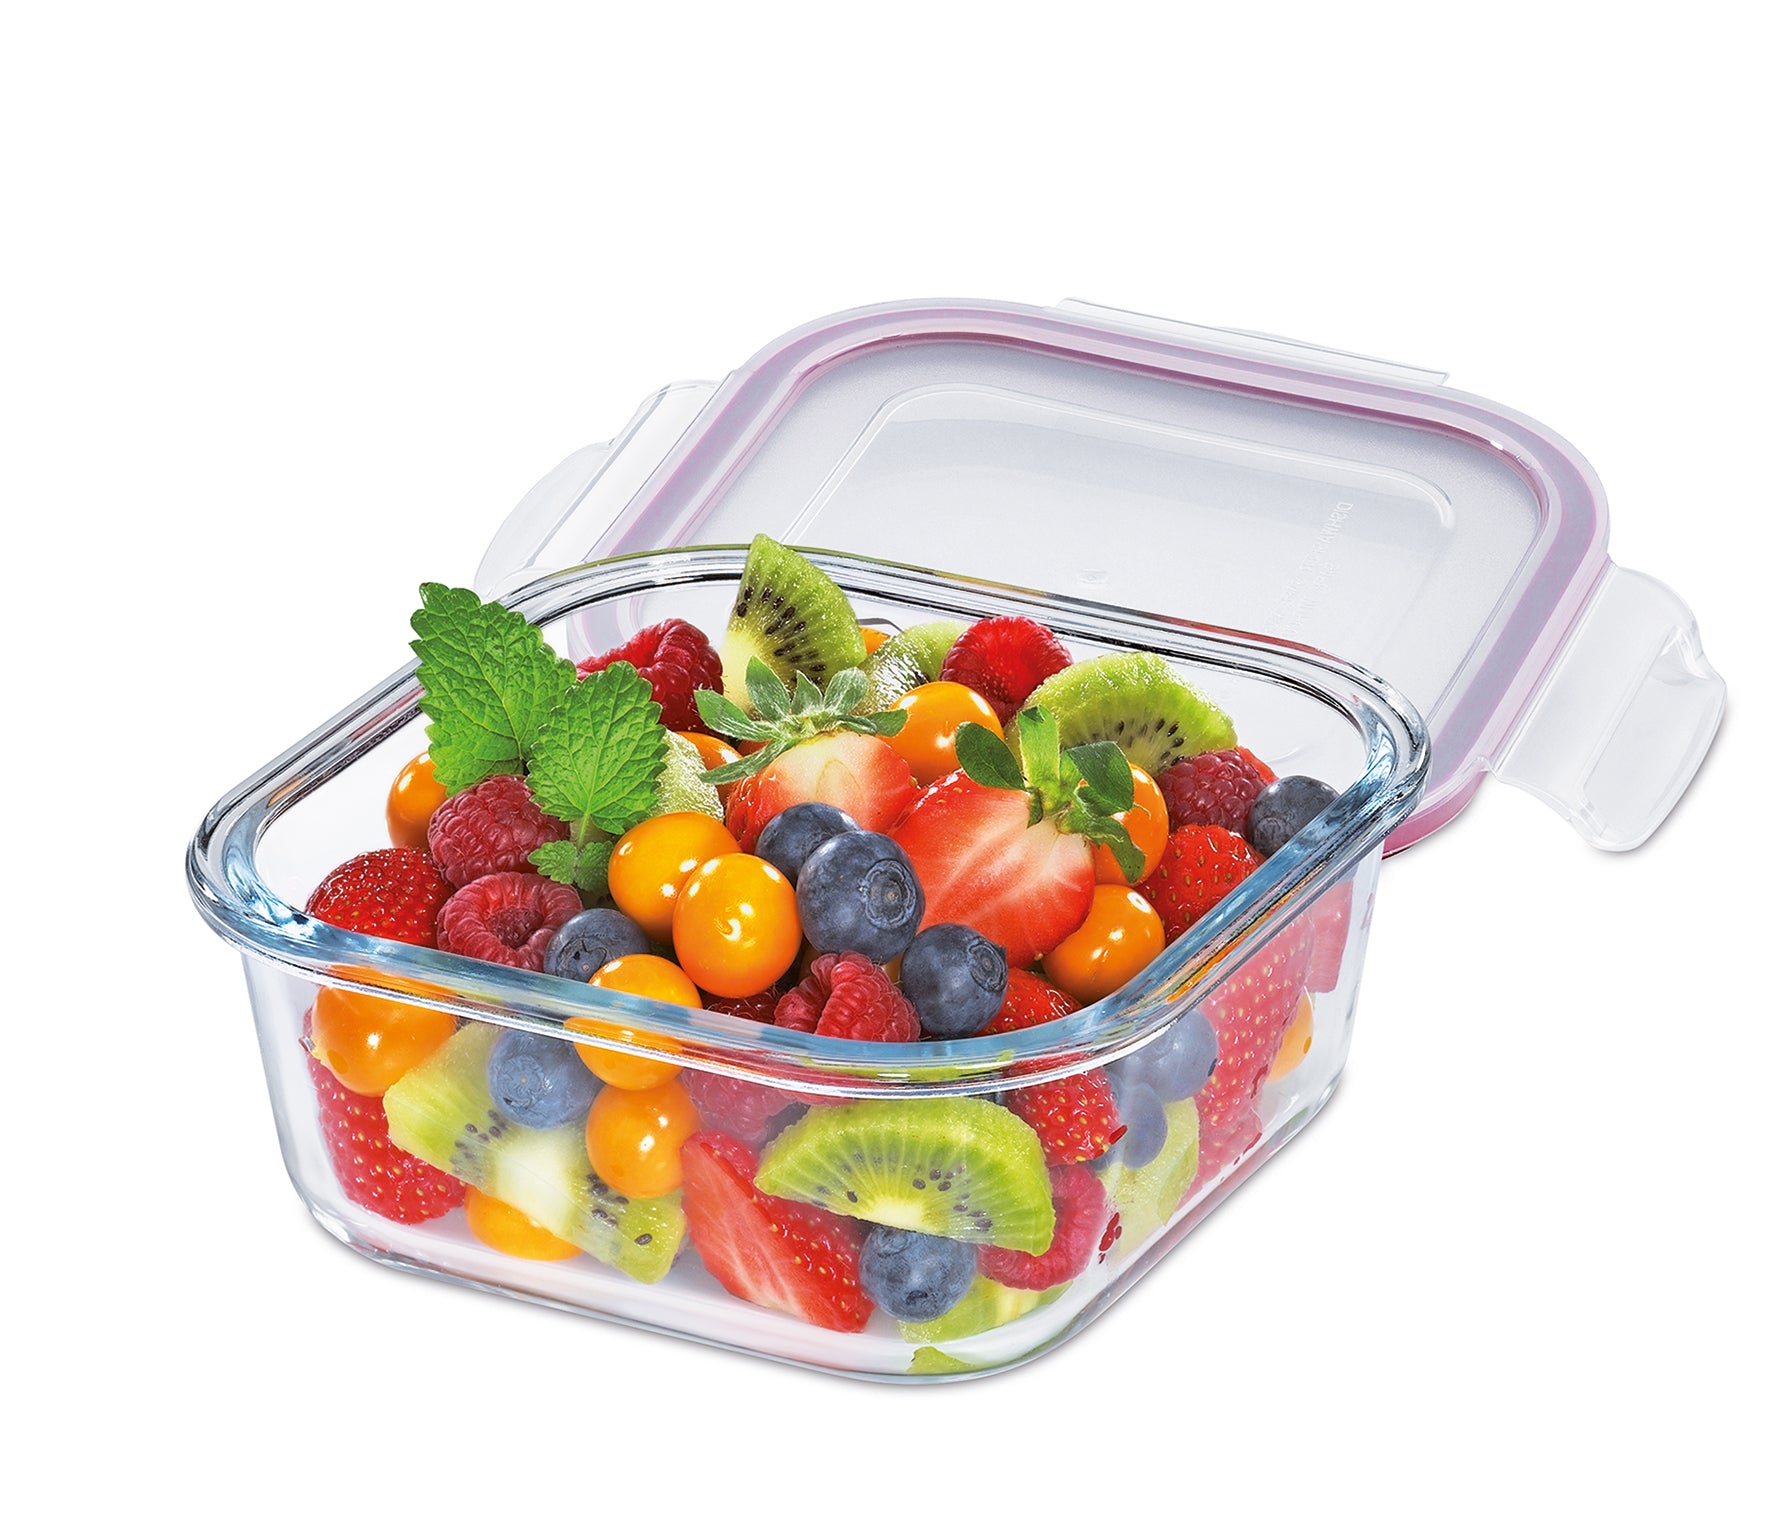 Kuchenprofi Lunch box/contenitore vetro quadrato ermetico ml 800